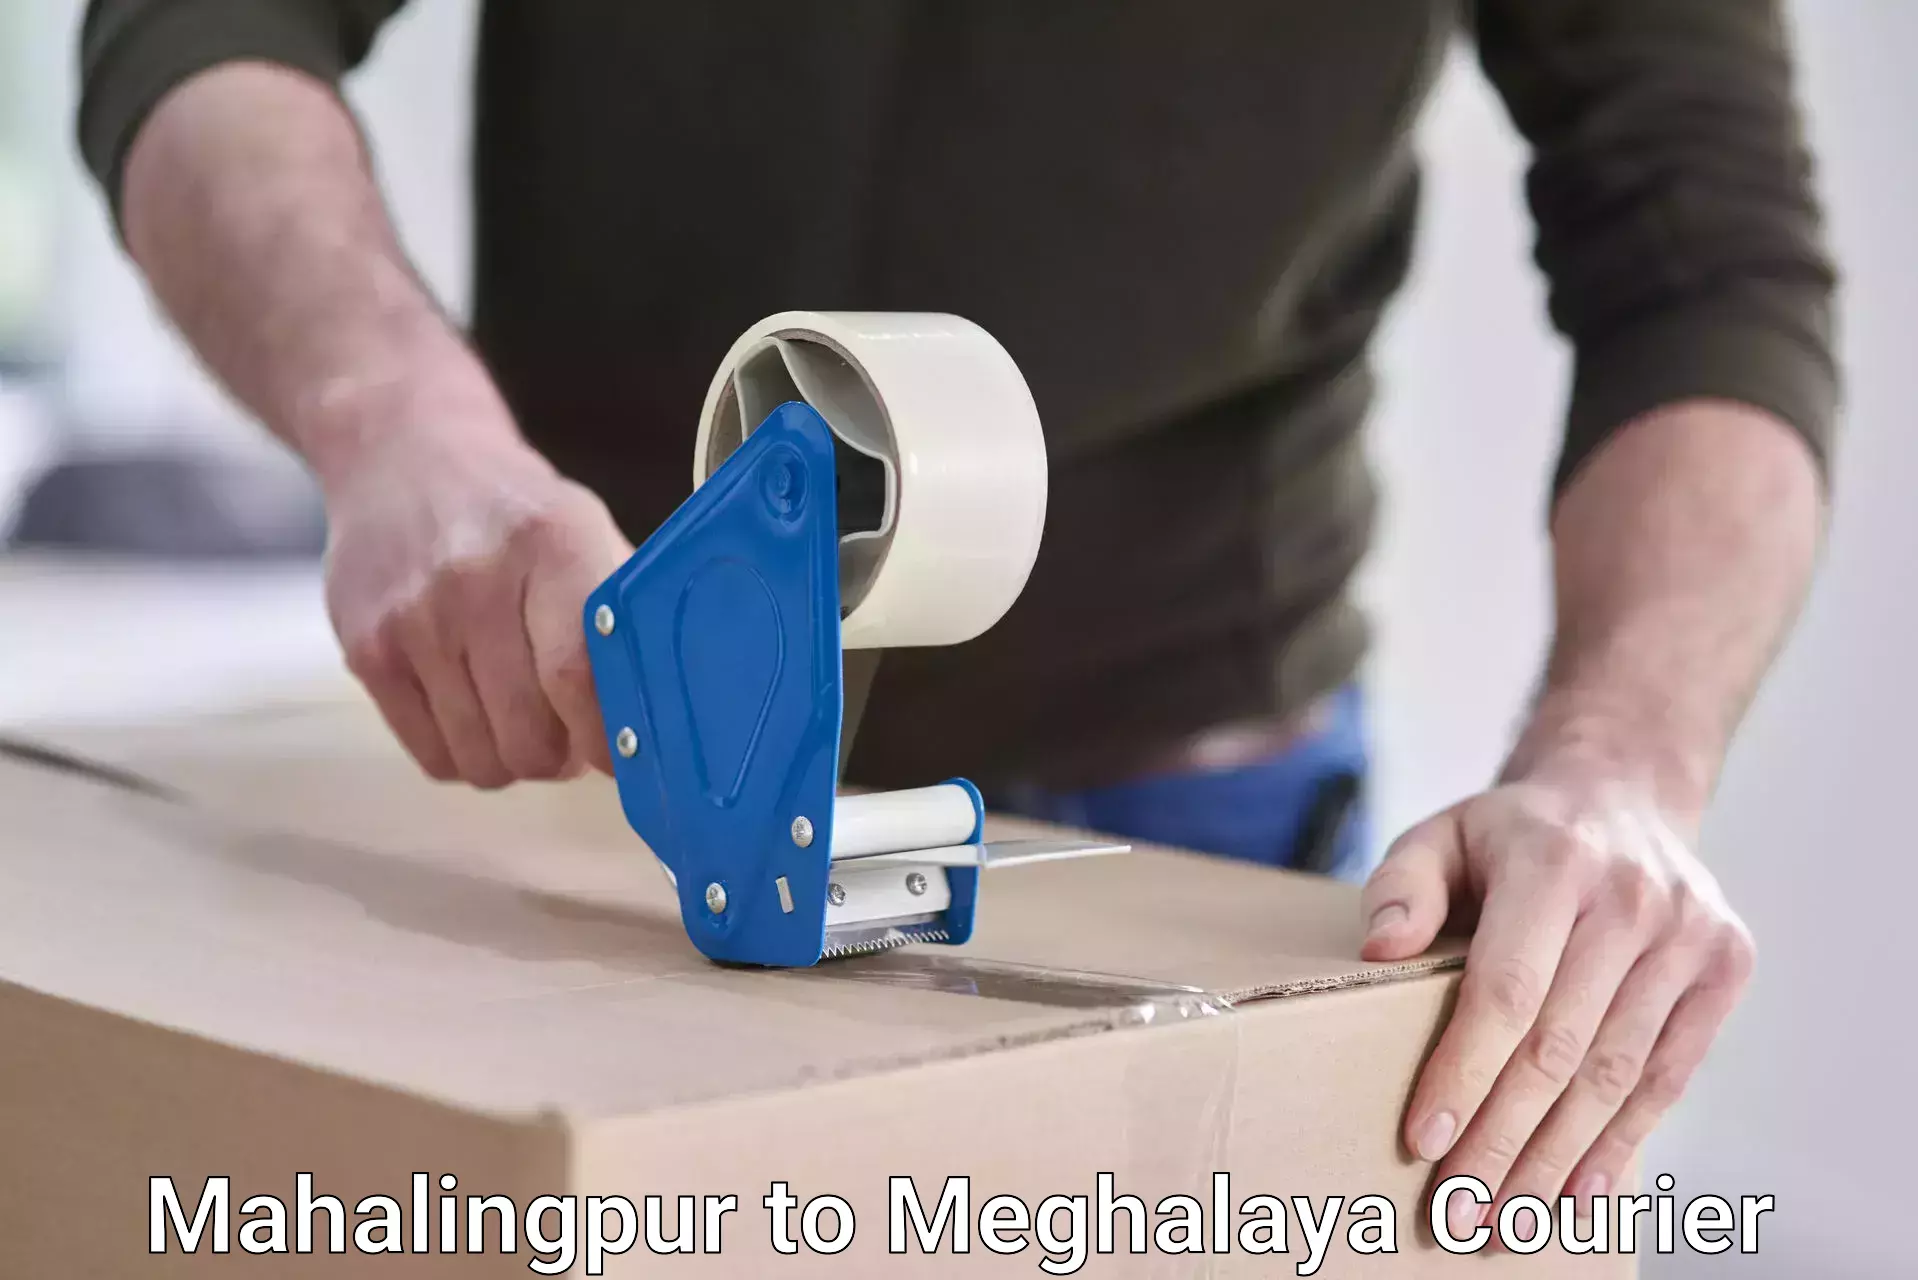 Customer-centric shipping Mahalingpur to Marshillong